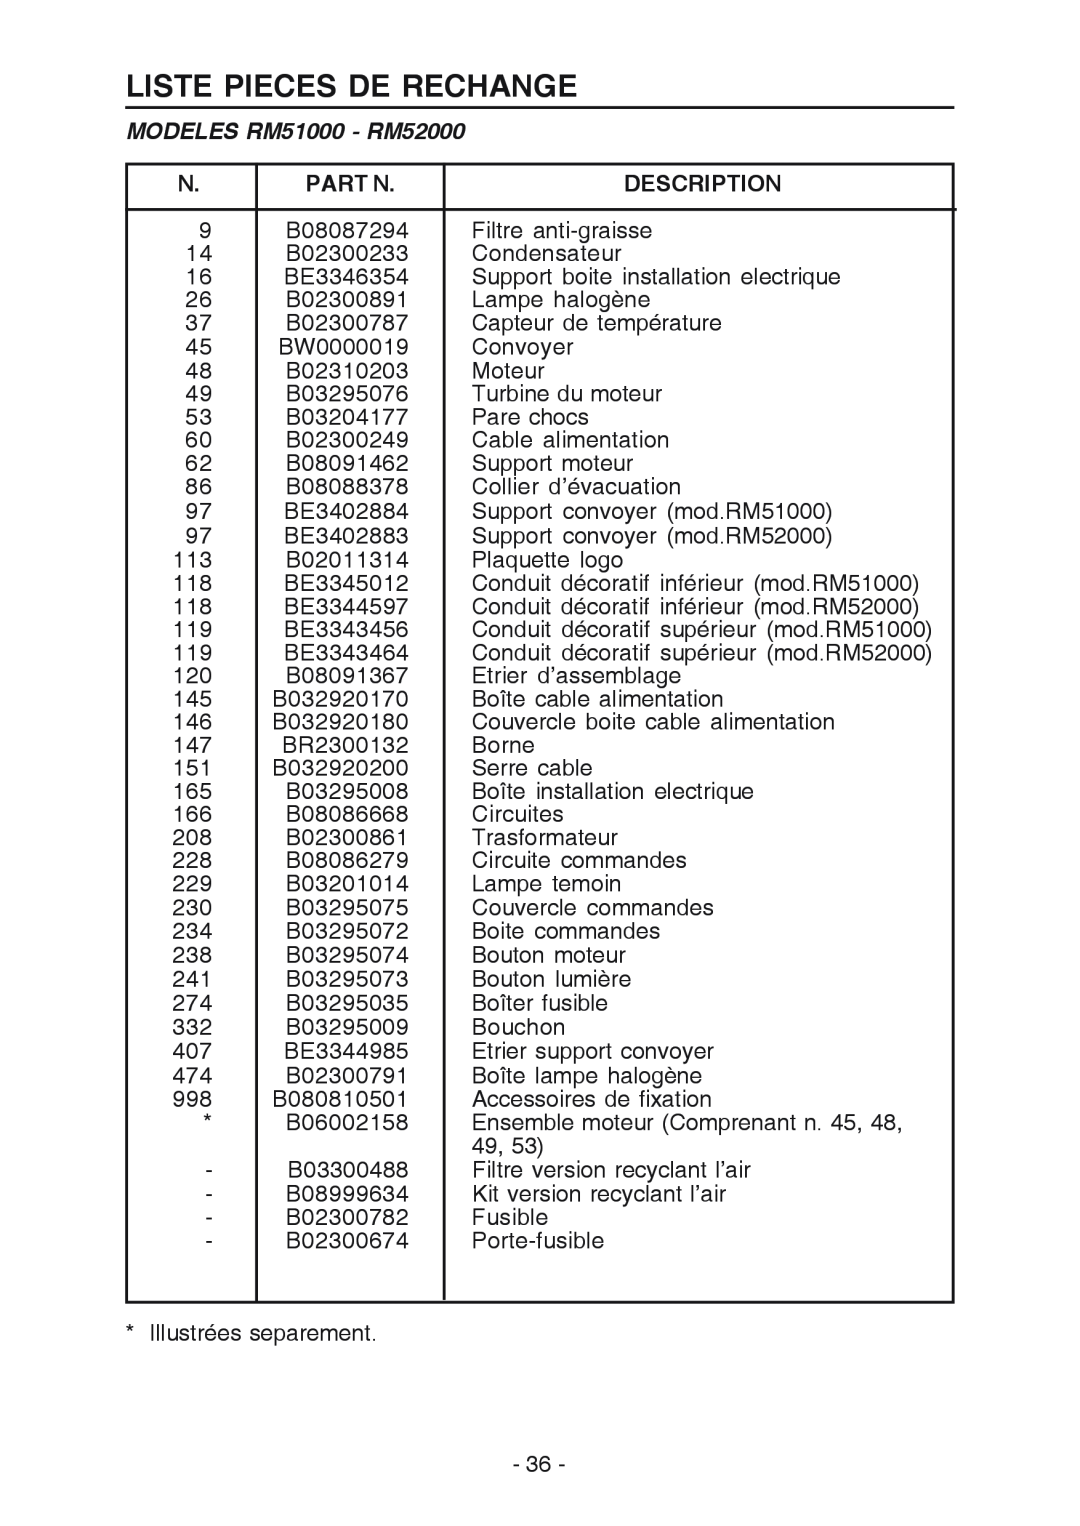 Broan RM519004 manual Liste Pieces De Rechange, MODELES RM51000 - RM52000, Part N, Description 